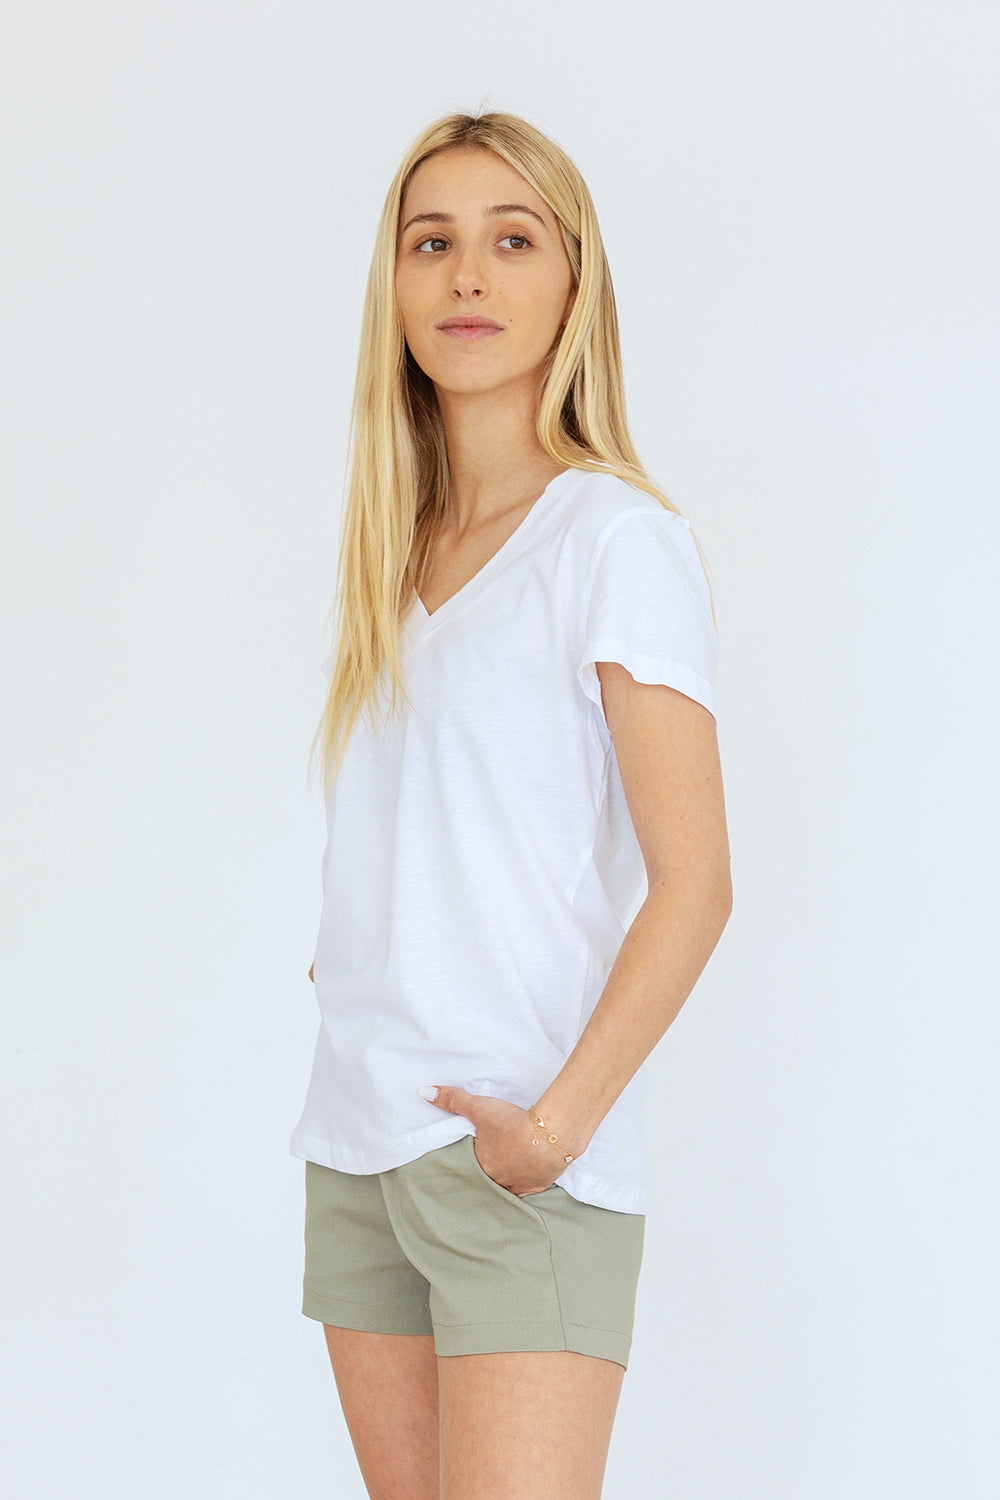 Cotton V T-Shirt White